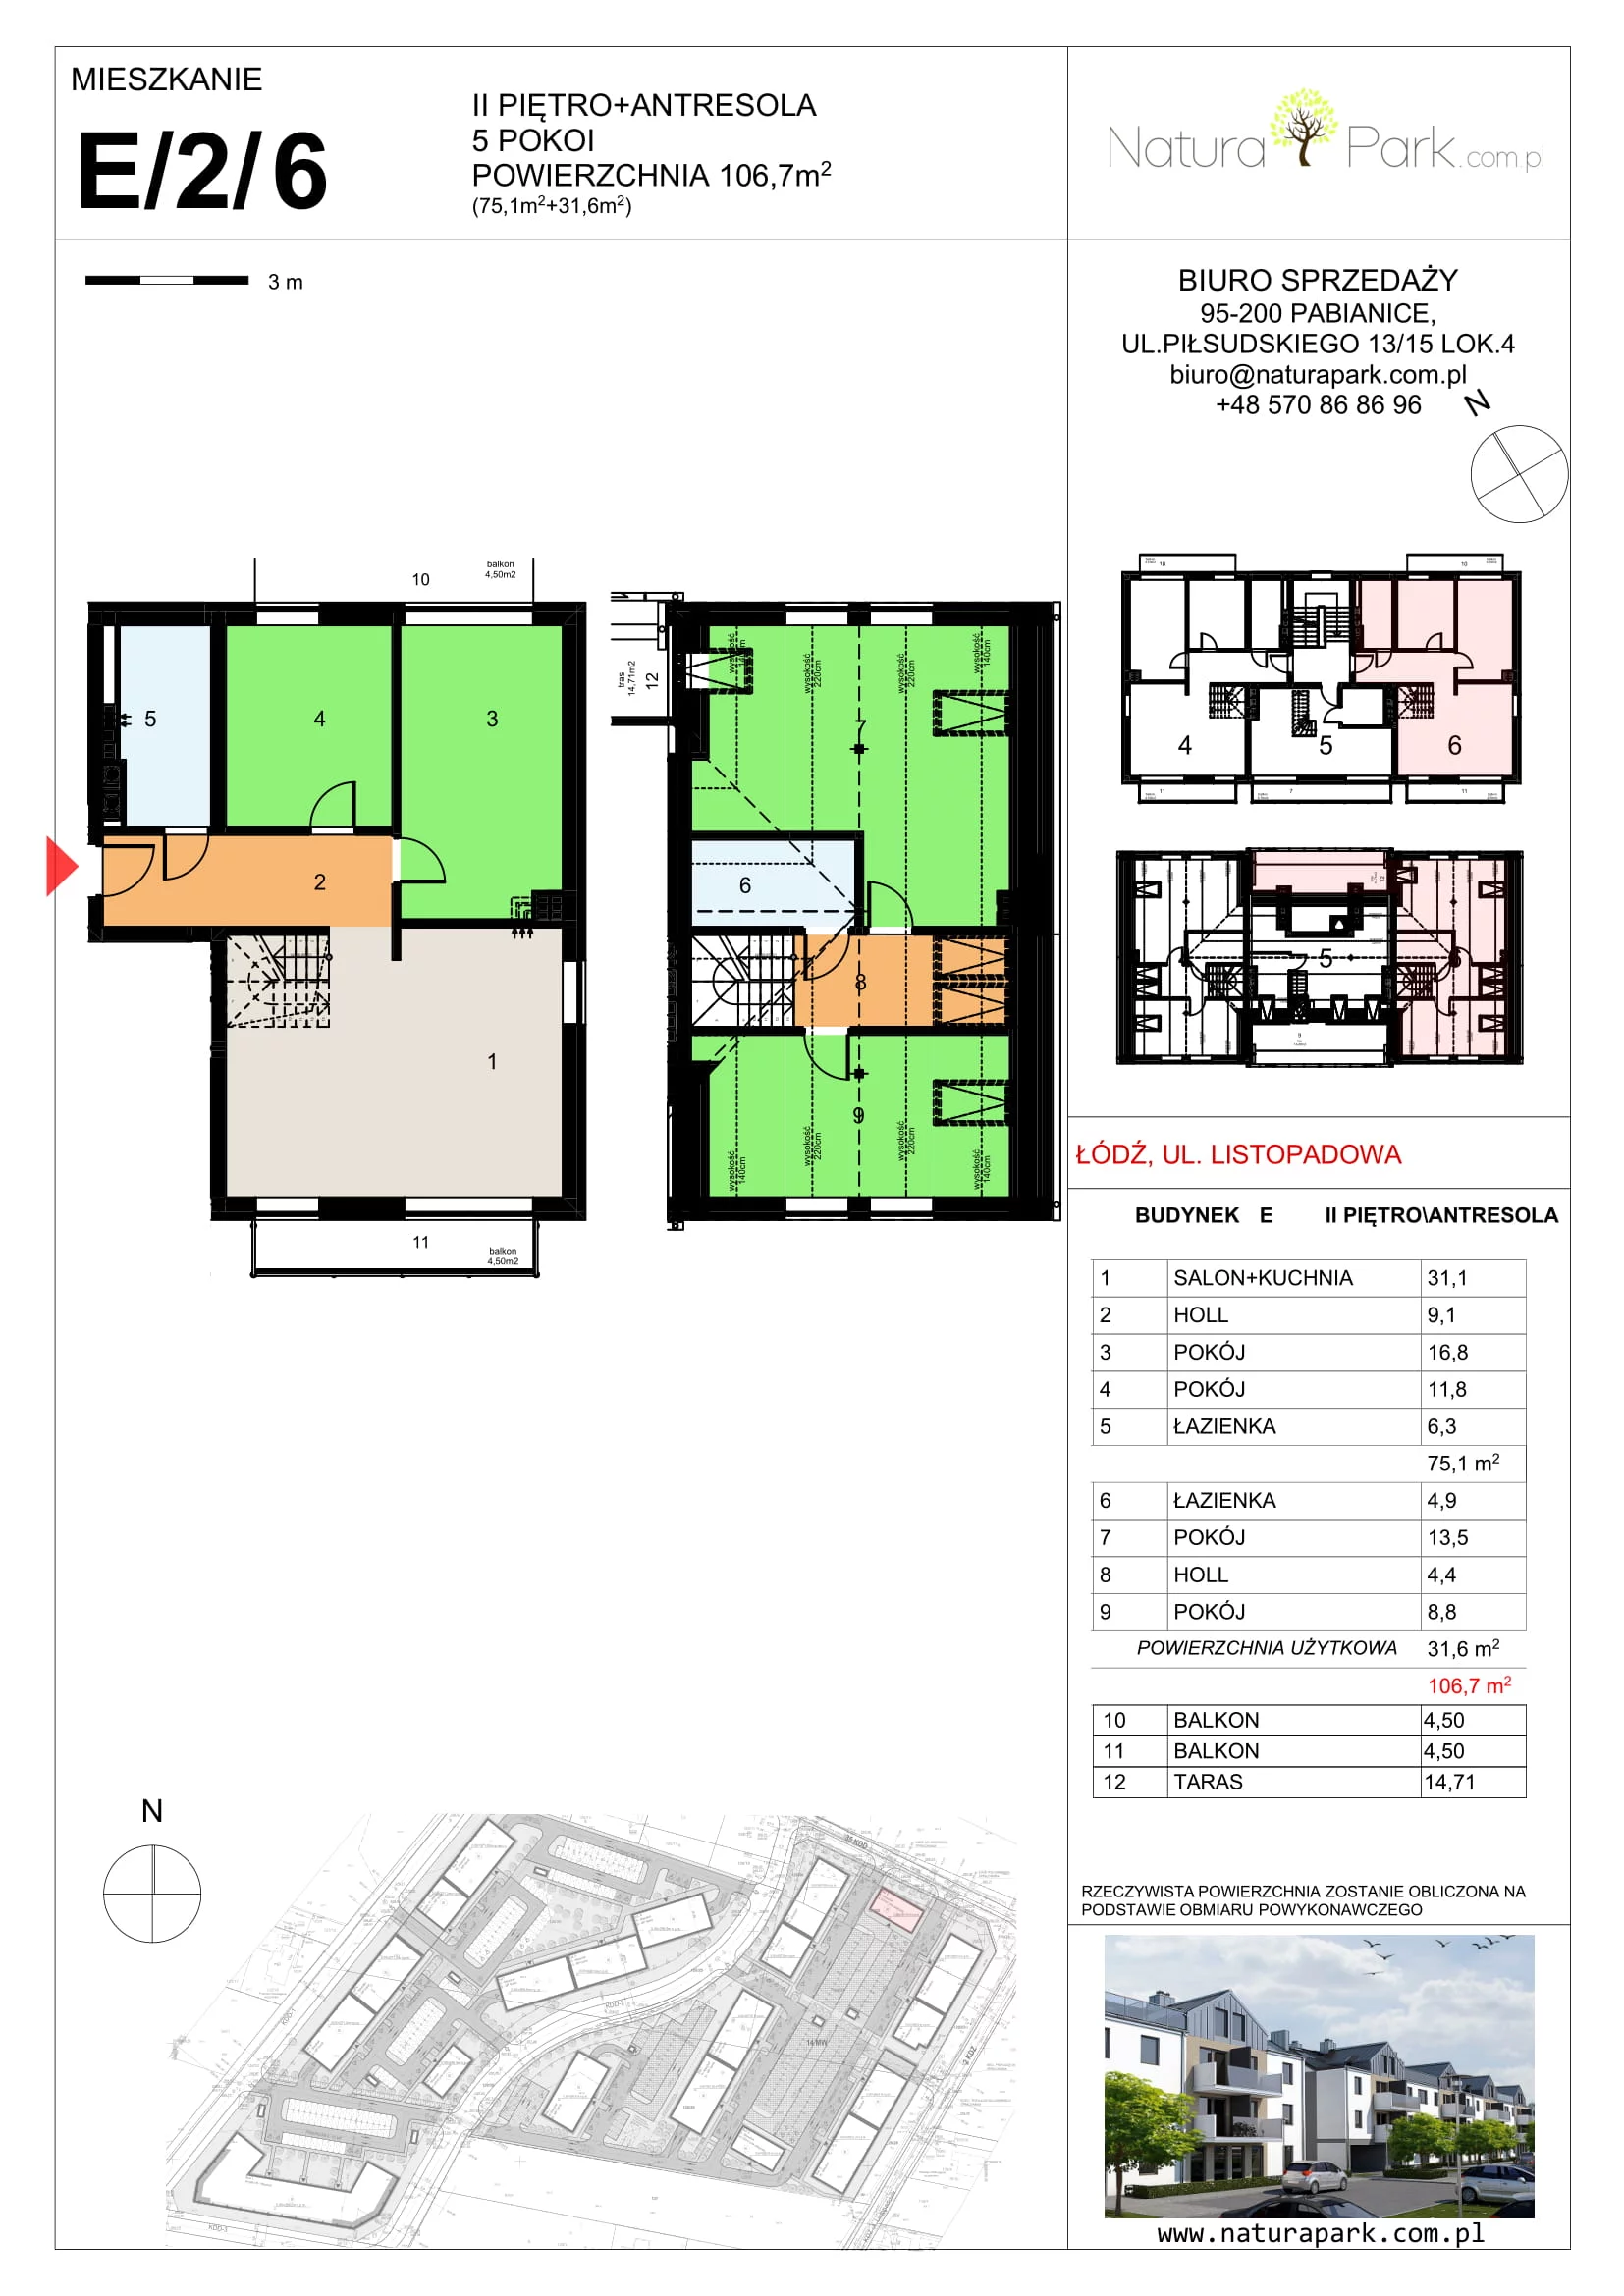 Mieszkanie 106,70 m², piętro 2, oferta nr E/2/6, Natura Park, Łódź, Widzew, Dolina Łódki, ul. Listopadowa